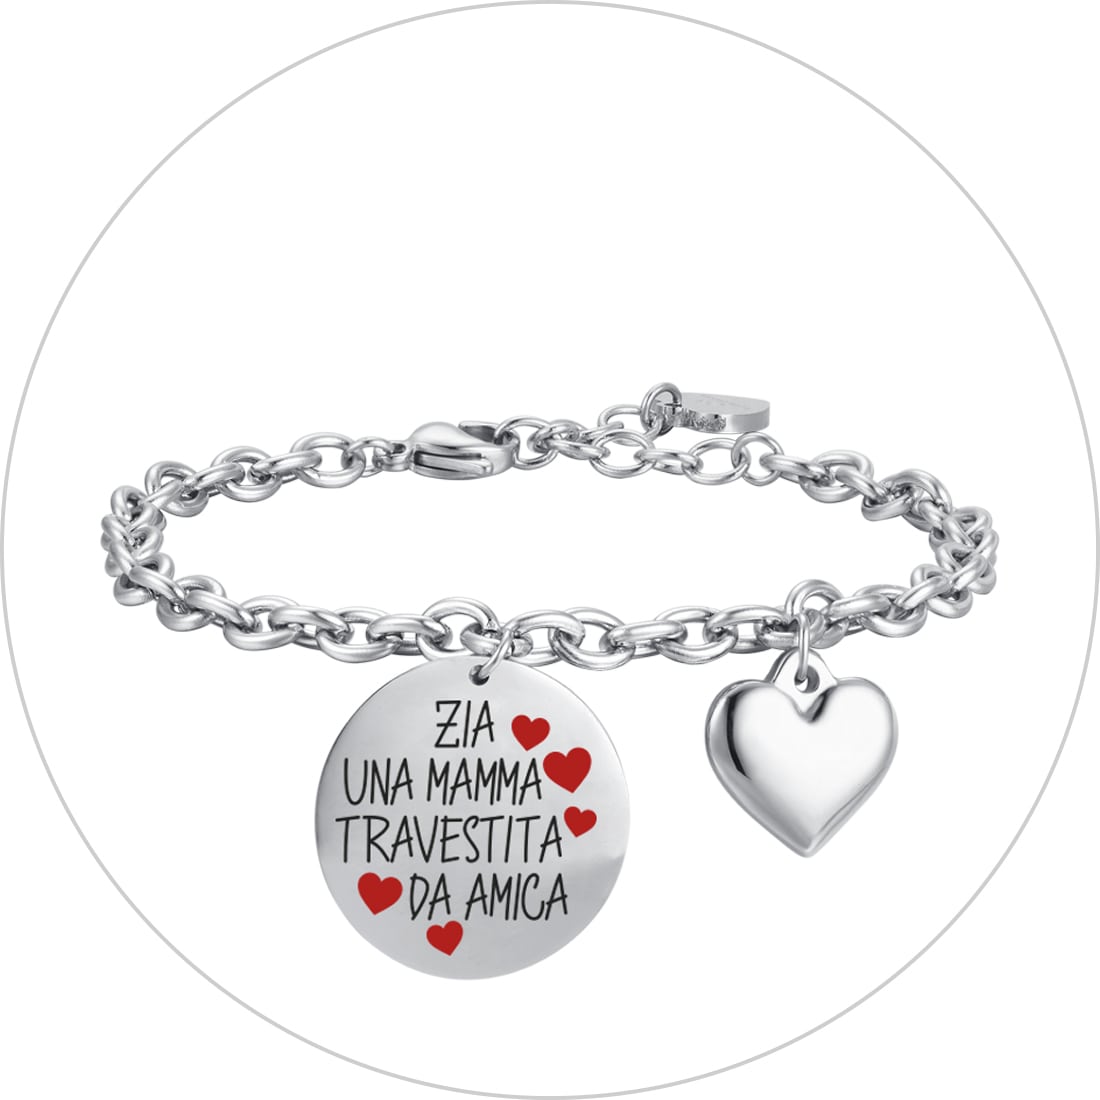 Idee Regalo Donna: i migliori gioielli da regalare a una donna – Luca Barra